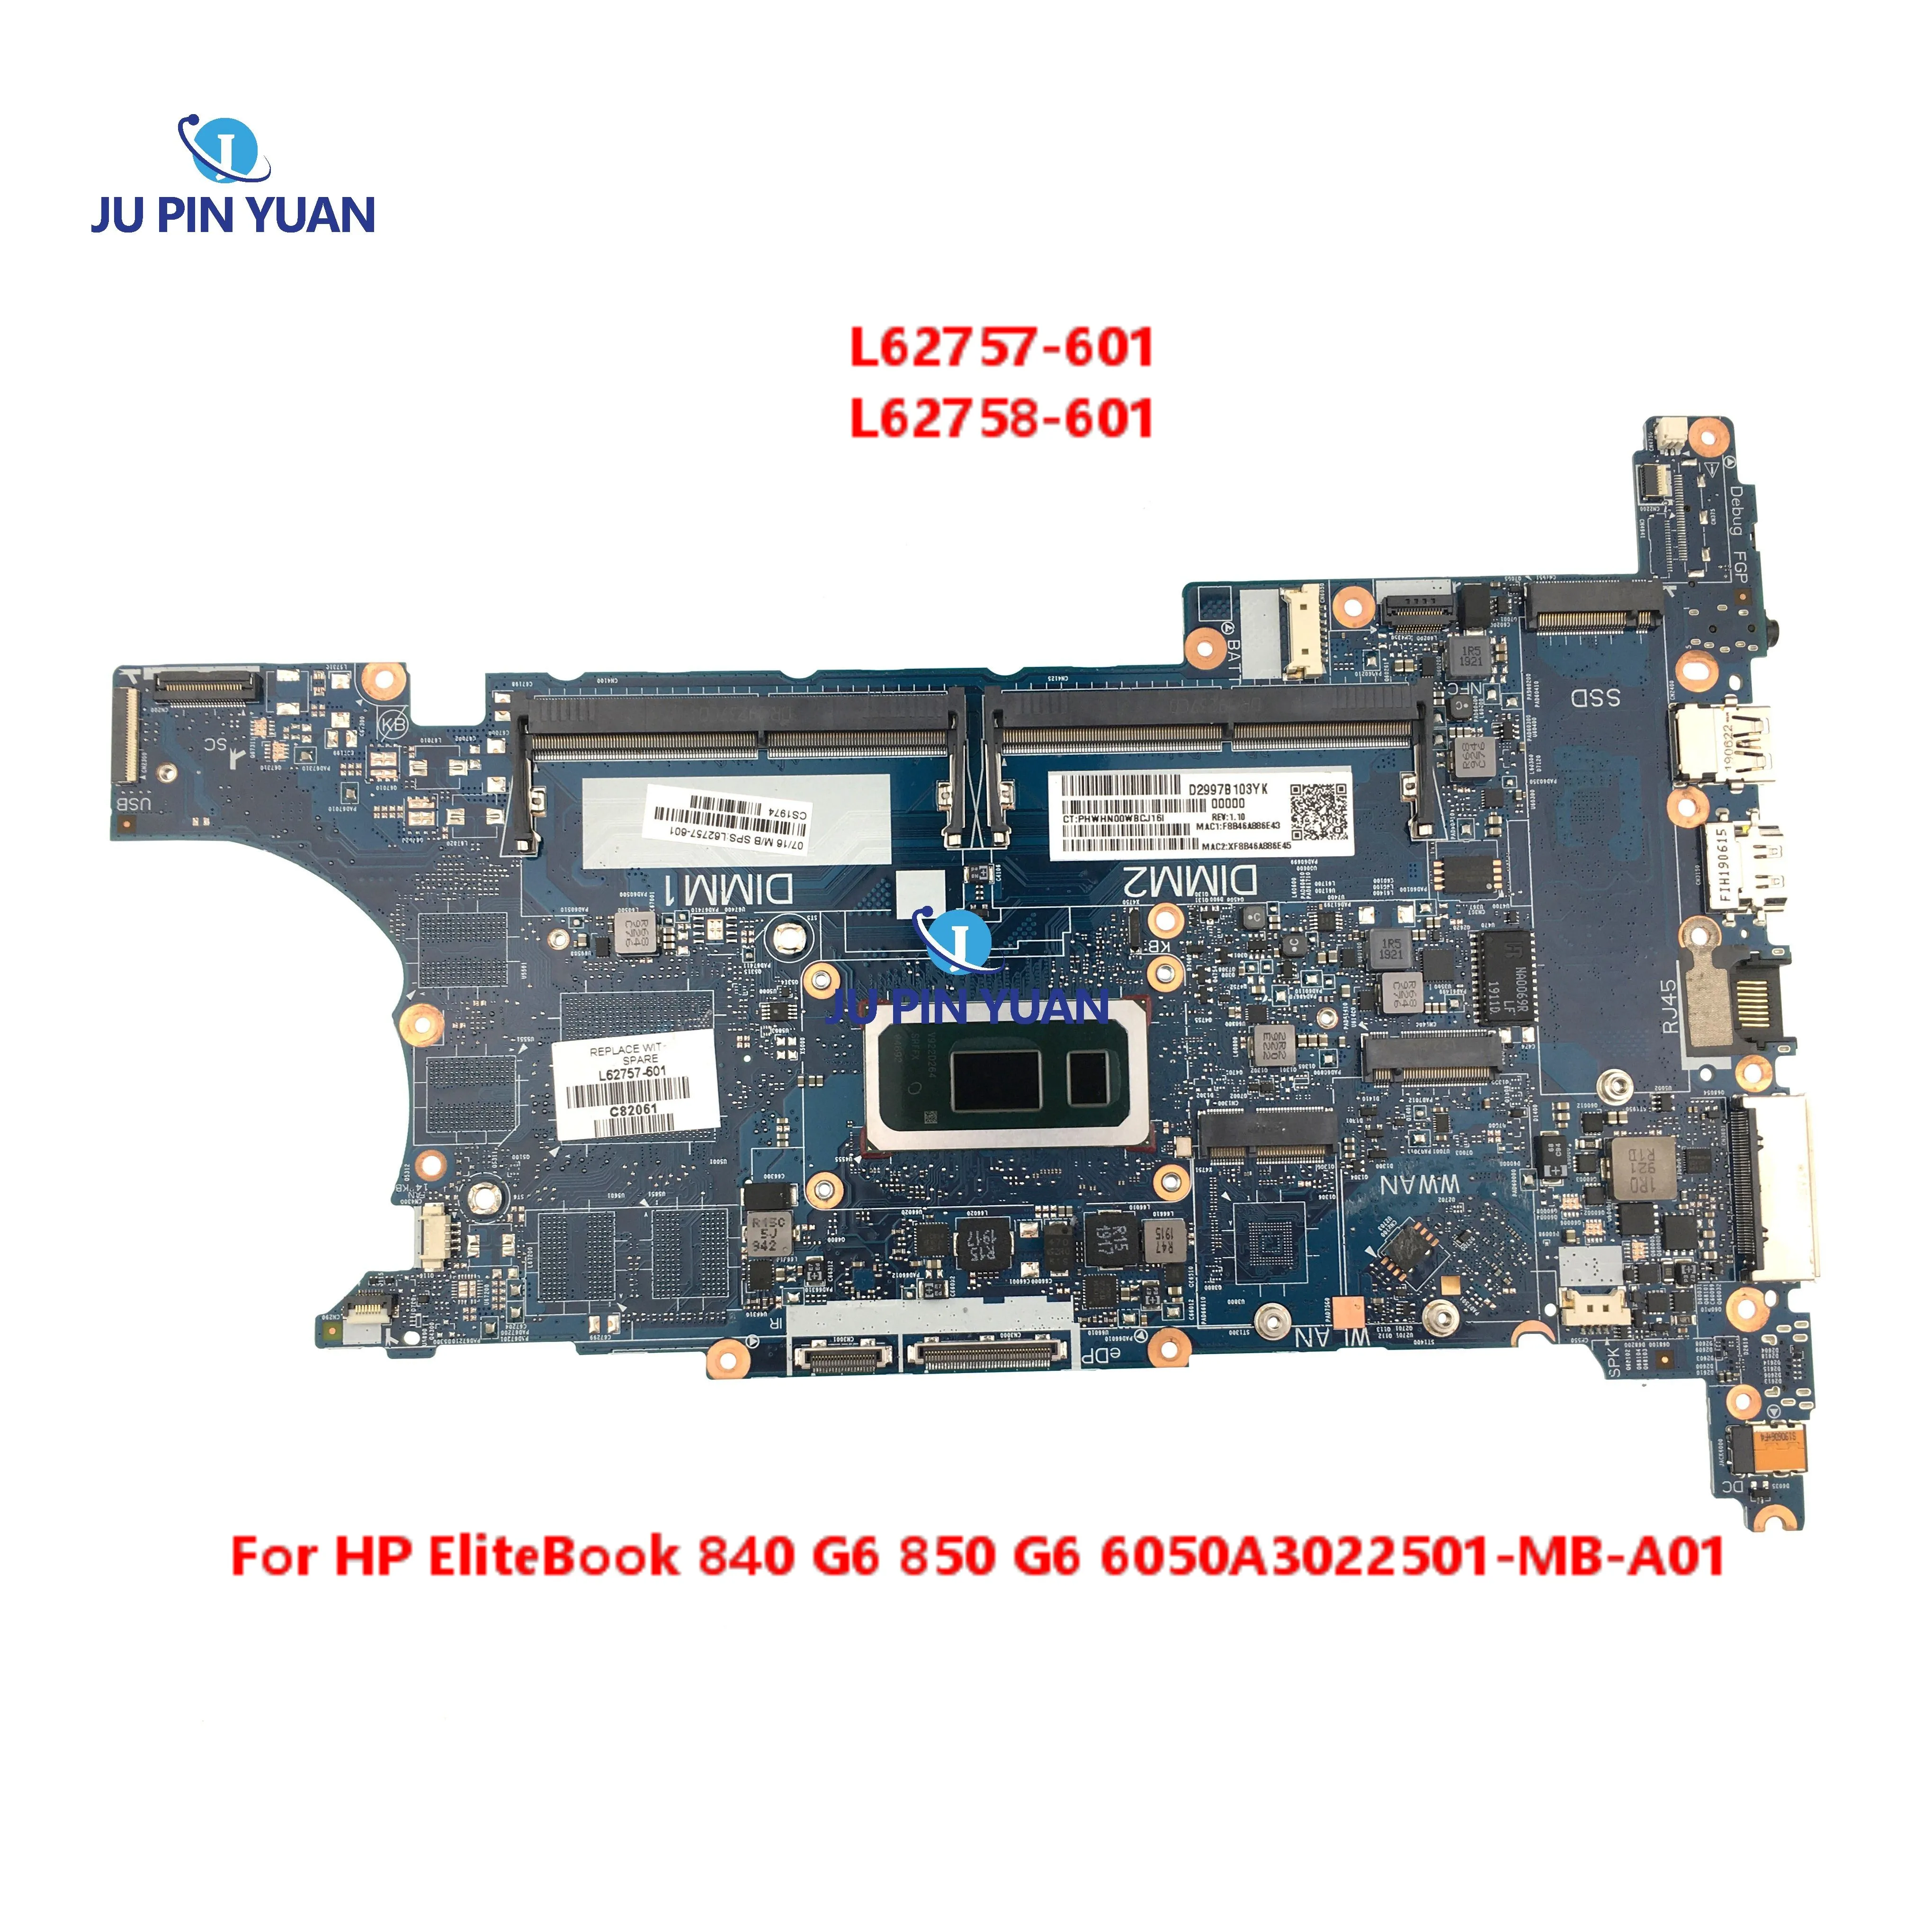 

L62757-601 L62758-601 For HP EliteBook 840 G6 850 G6 Laptop Motherboard I5-8265U I7-8565U CPU 6050A3022501-MB-A01 Mainboard